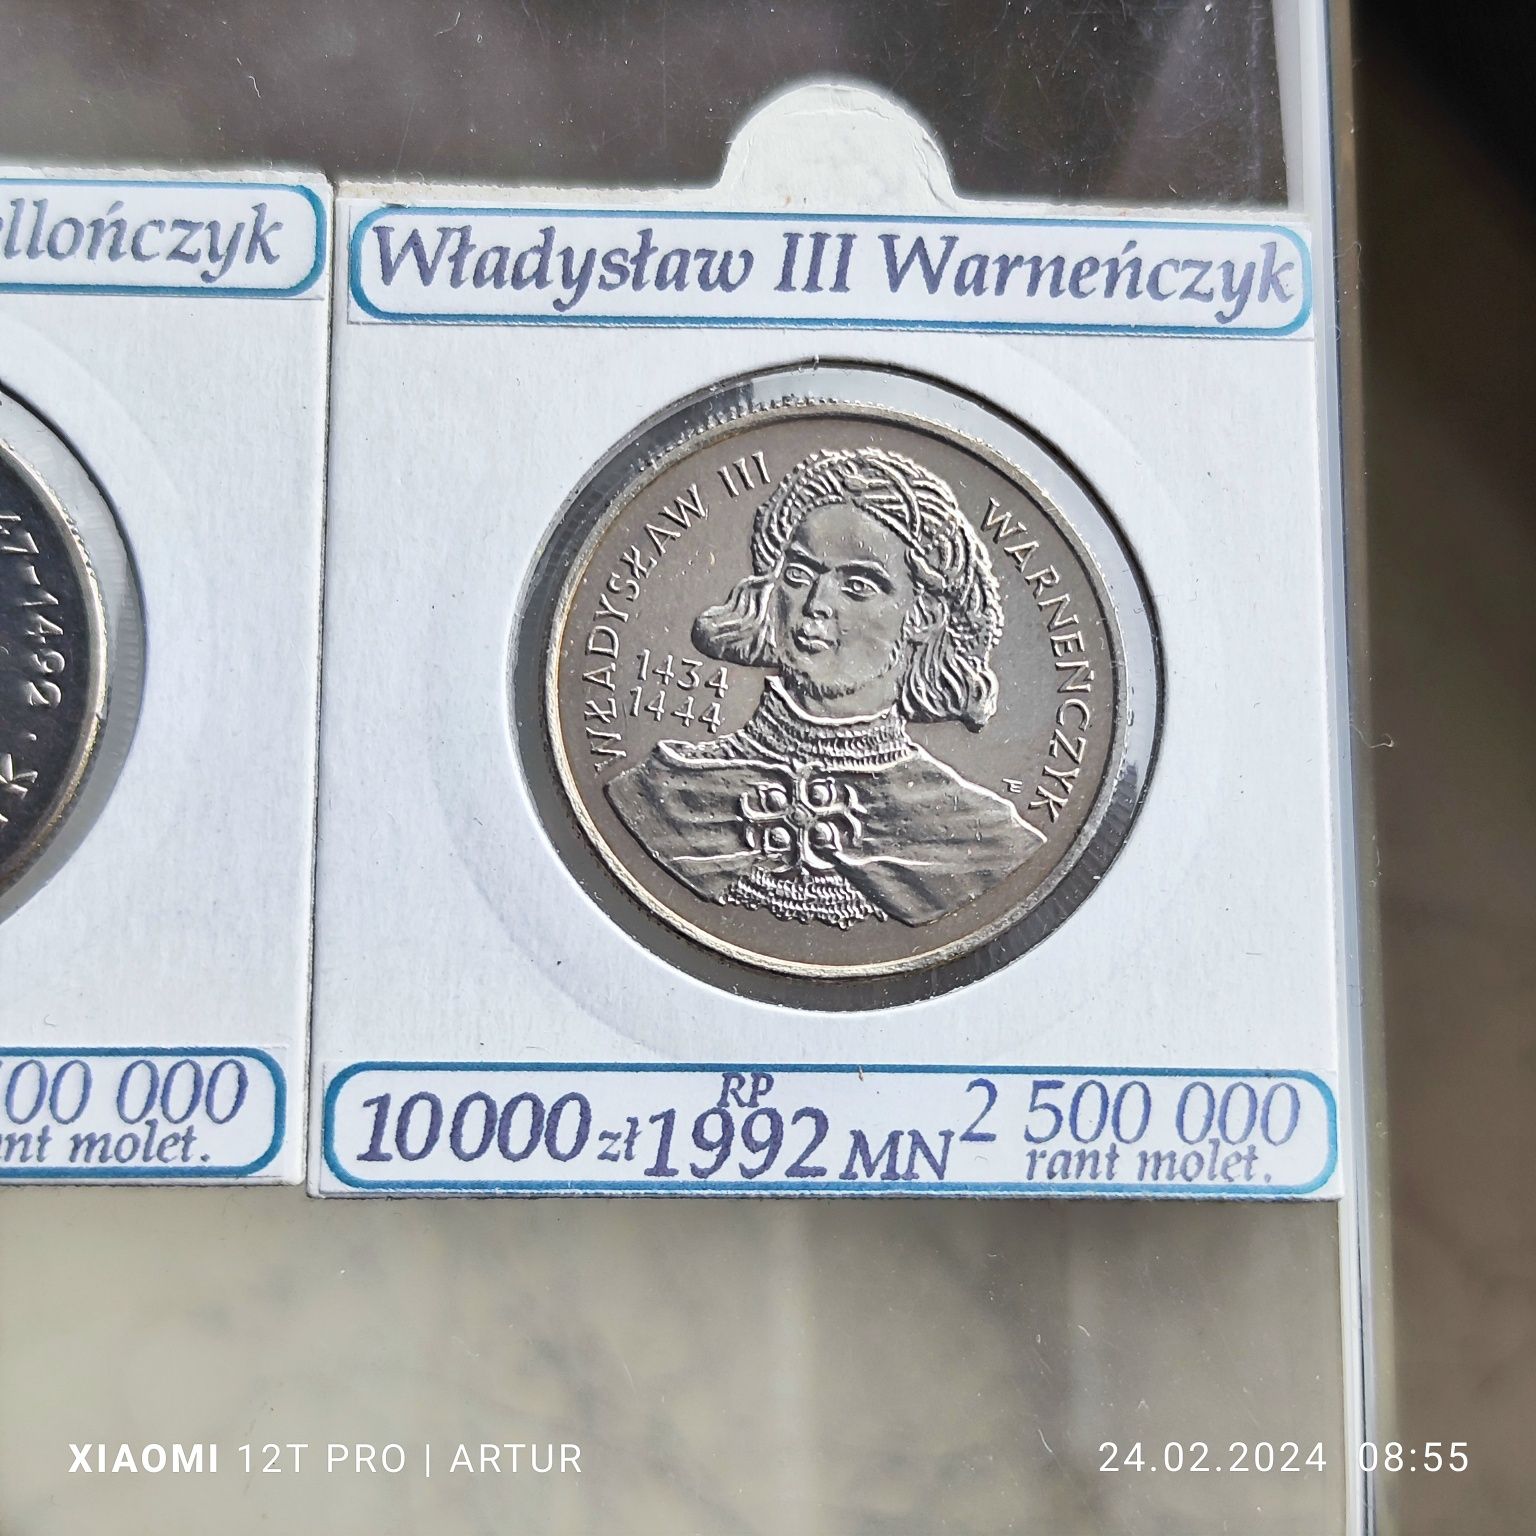 2 monety w holderach. Kazimierz Jagielończyk oraz Władysław Warneńczyk